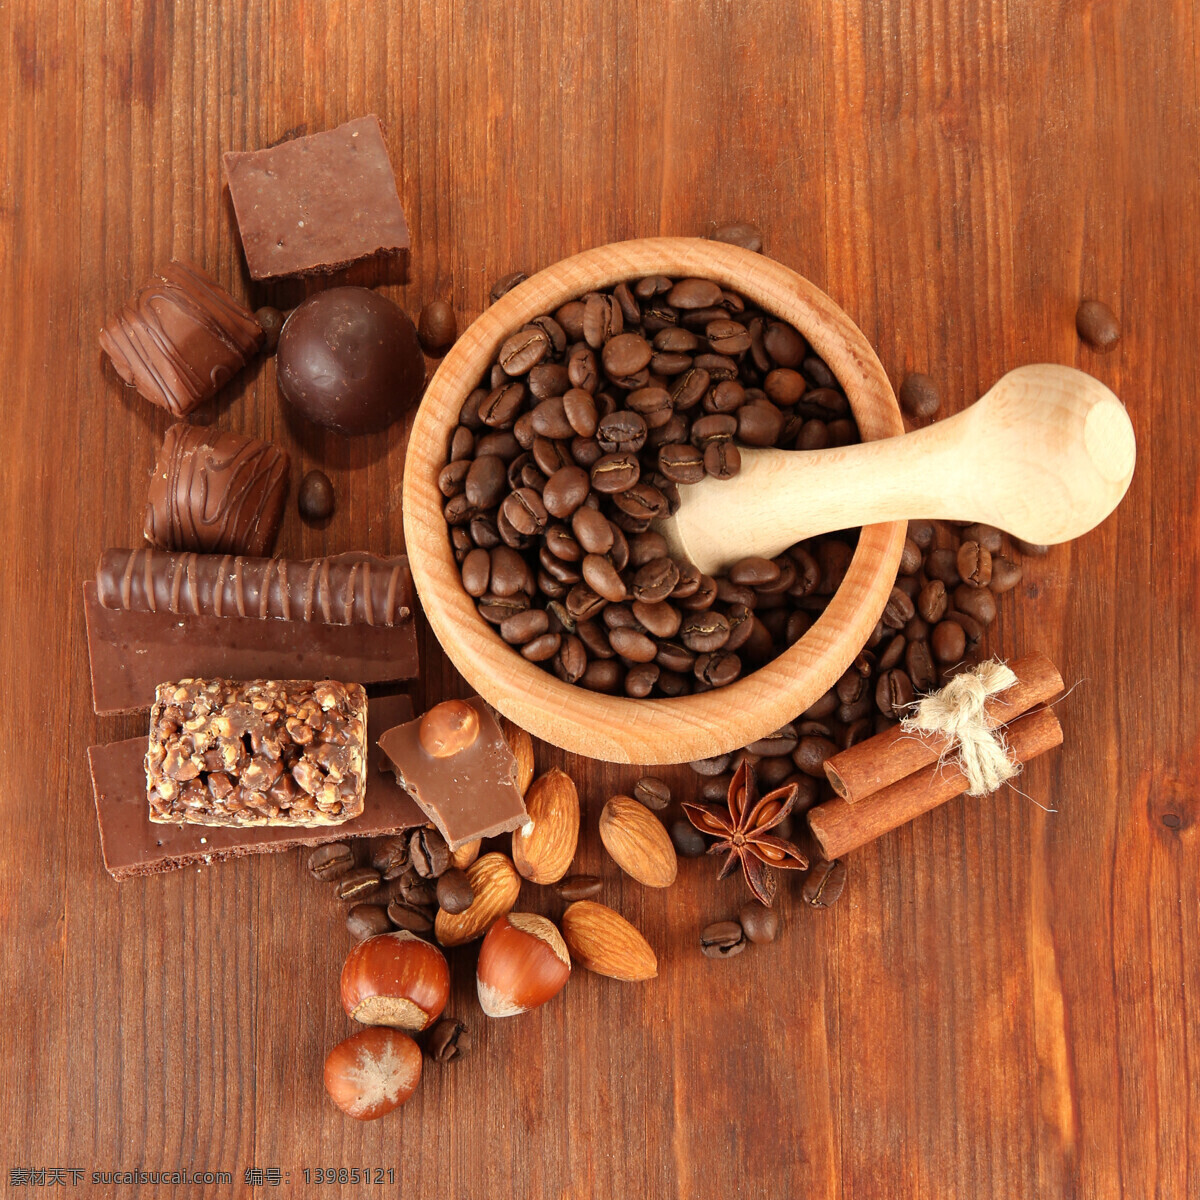 咖啡豆 巧克力 干果 舂臼 香料 翅果 巴旦木 肉桂 咖啡图片 餐饮美食